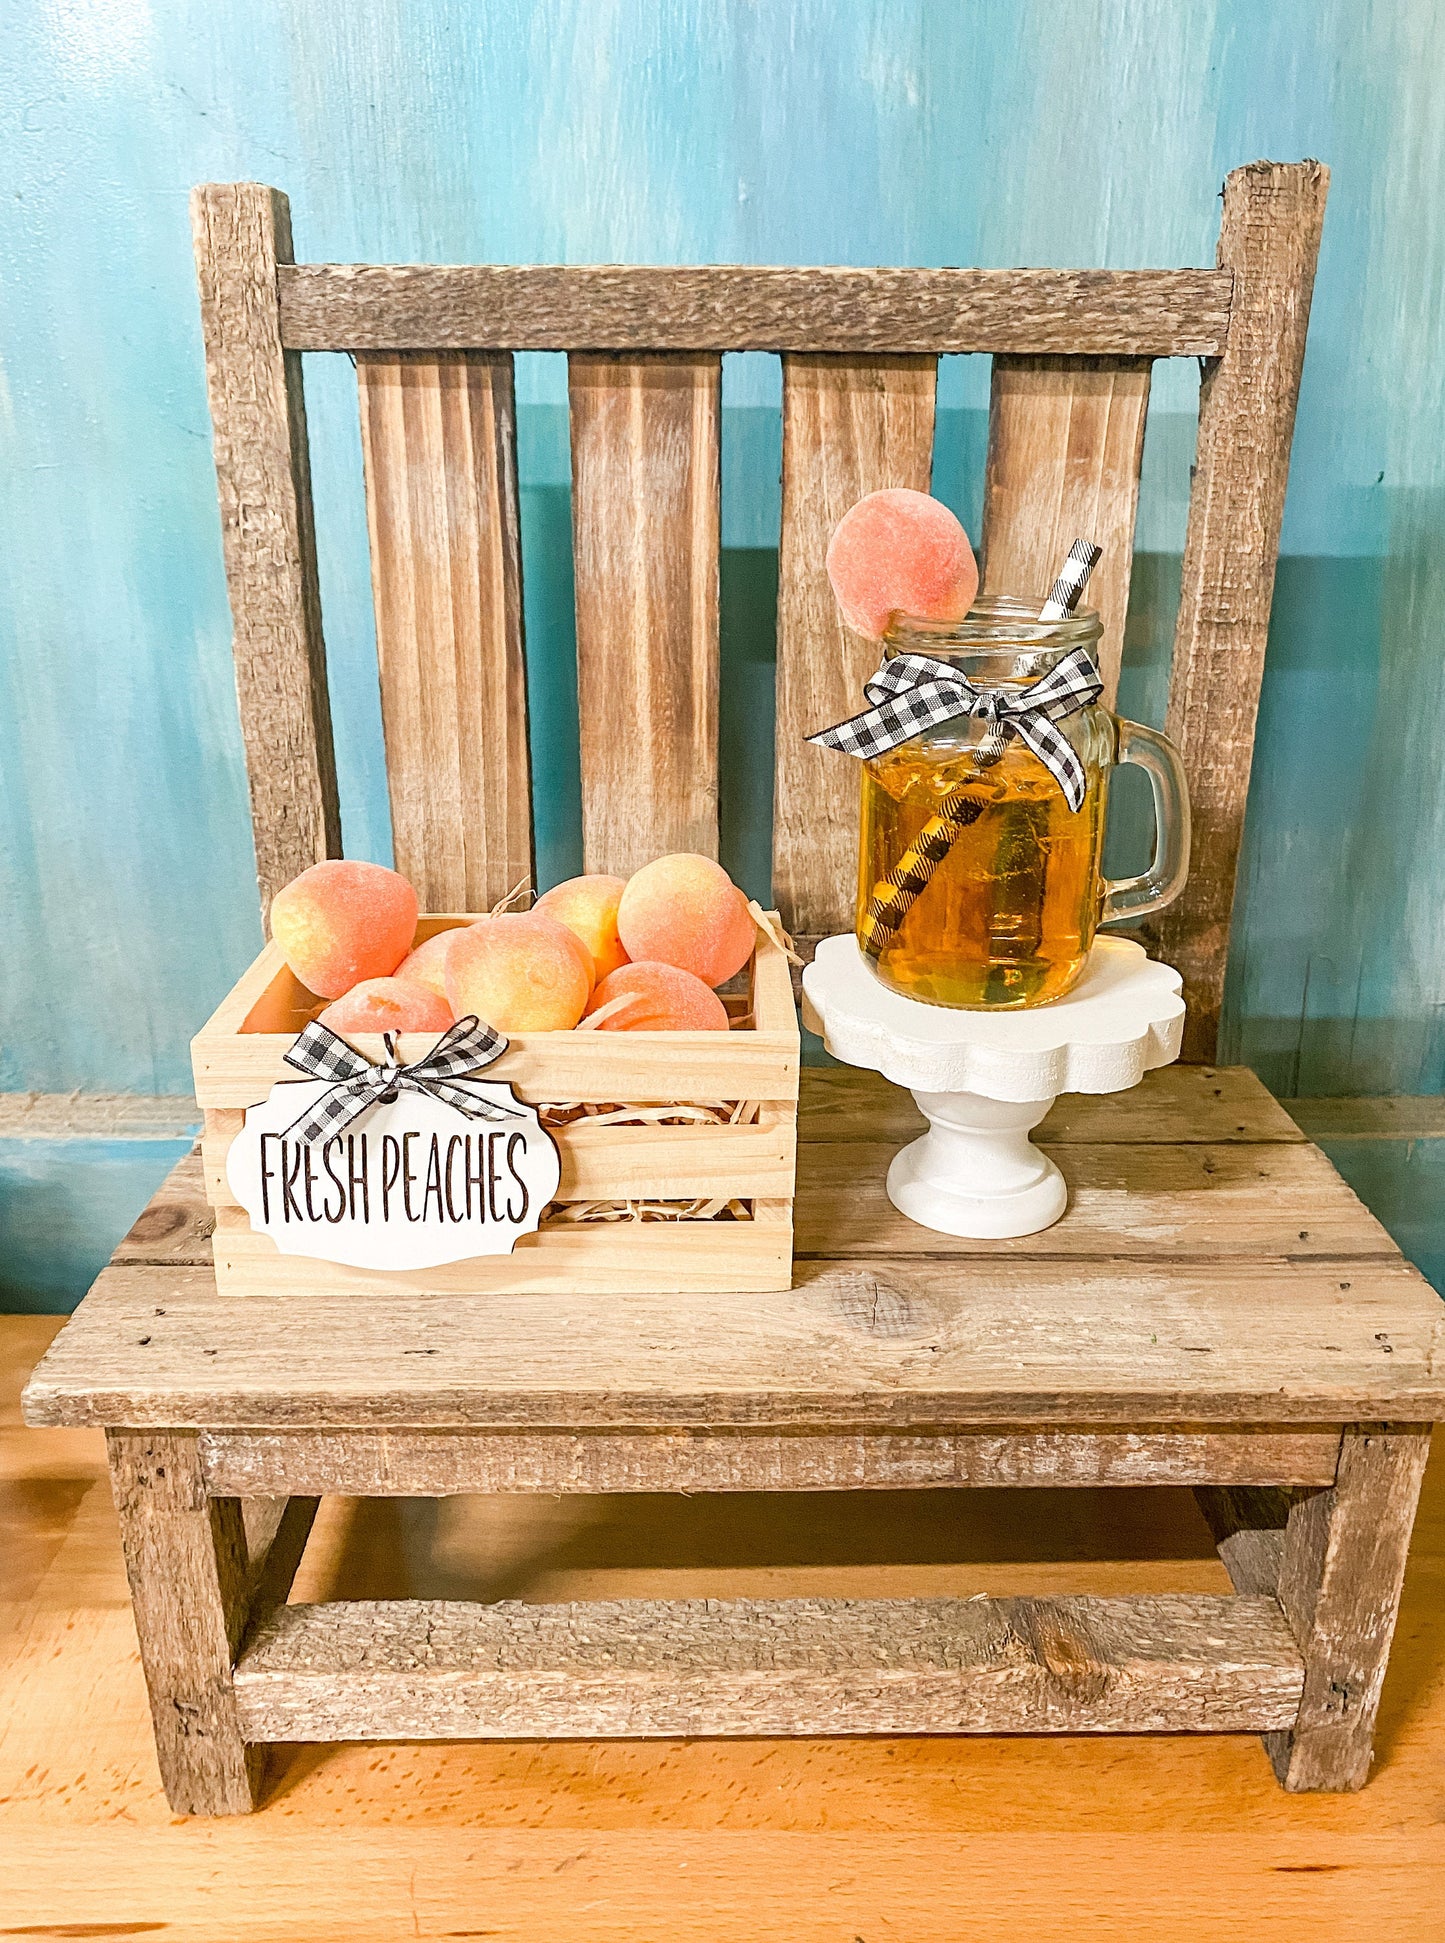 Peach crate, fresh peaches, peach decor, tiered tray size, peaches